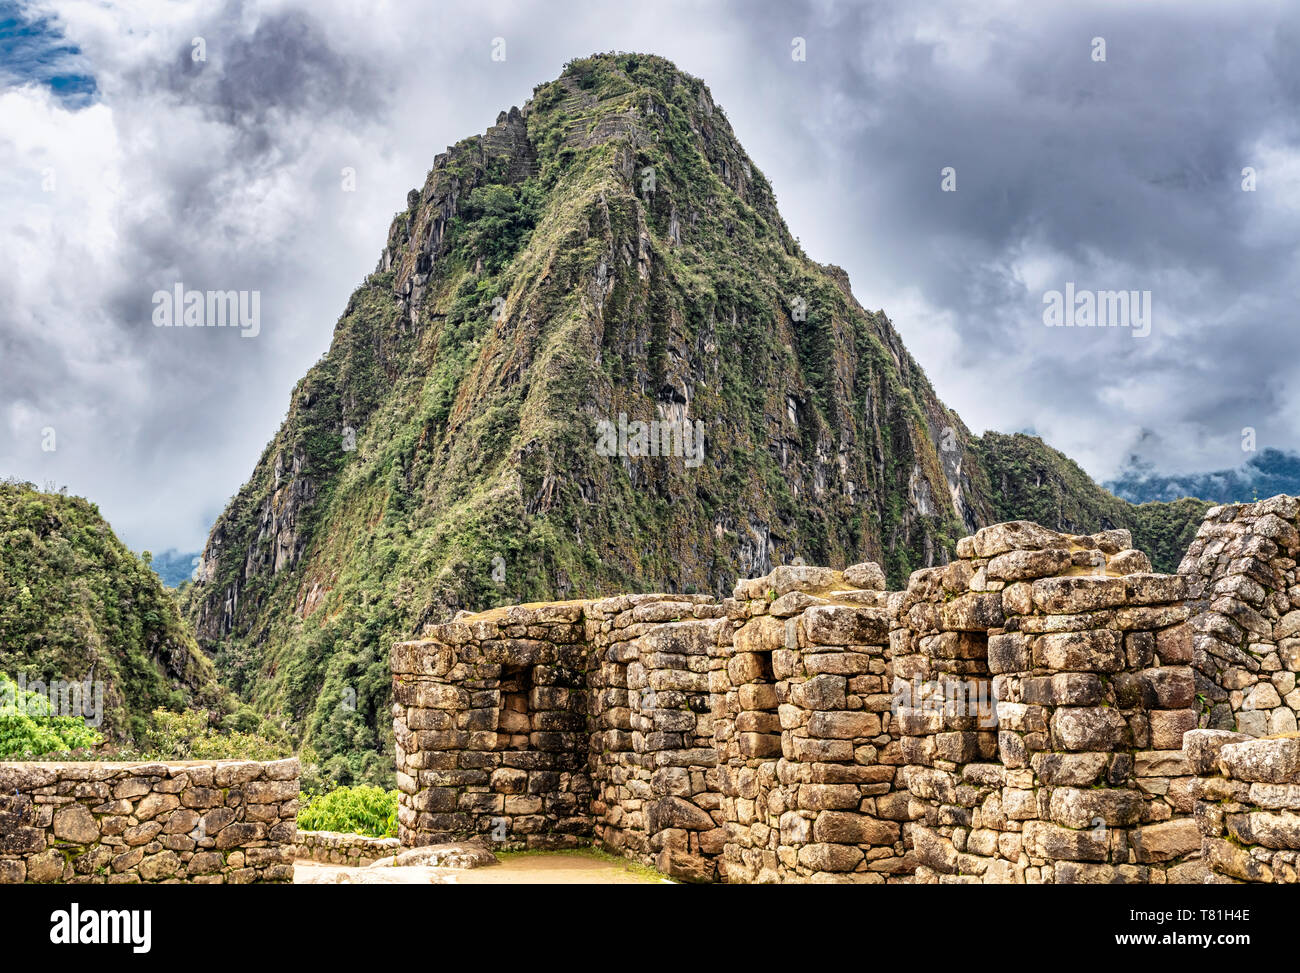 Gebäude, Häuser Strukturen in Inka Stadt von Machu Picchu in Peru. Wayna, Huayna Picchu Mountain Peak im Hintergrund. Stockfoto